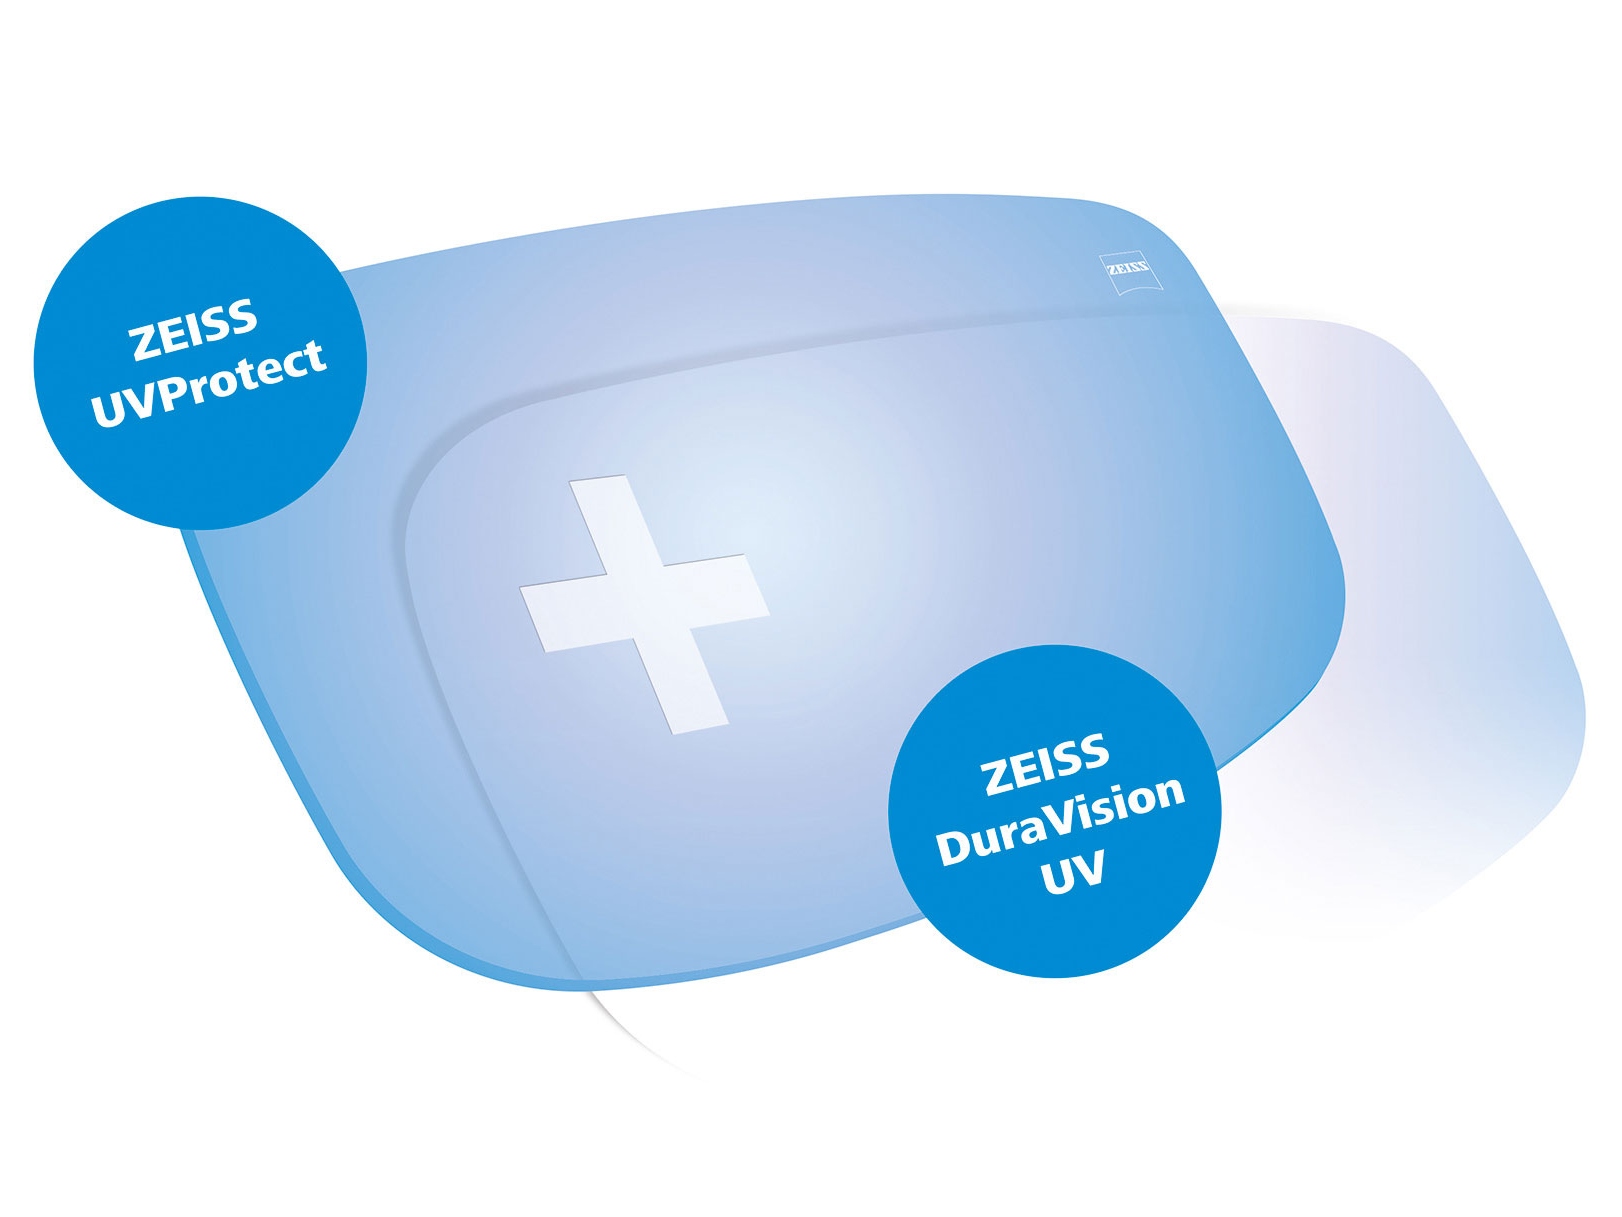 Alla glas från ZEISS har som standard ett fullt UV-skydd, från alla sidor. Bilden visar två lösningar.